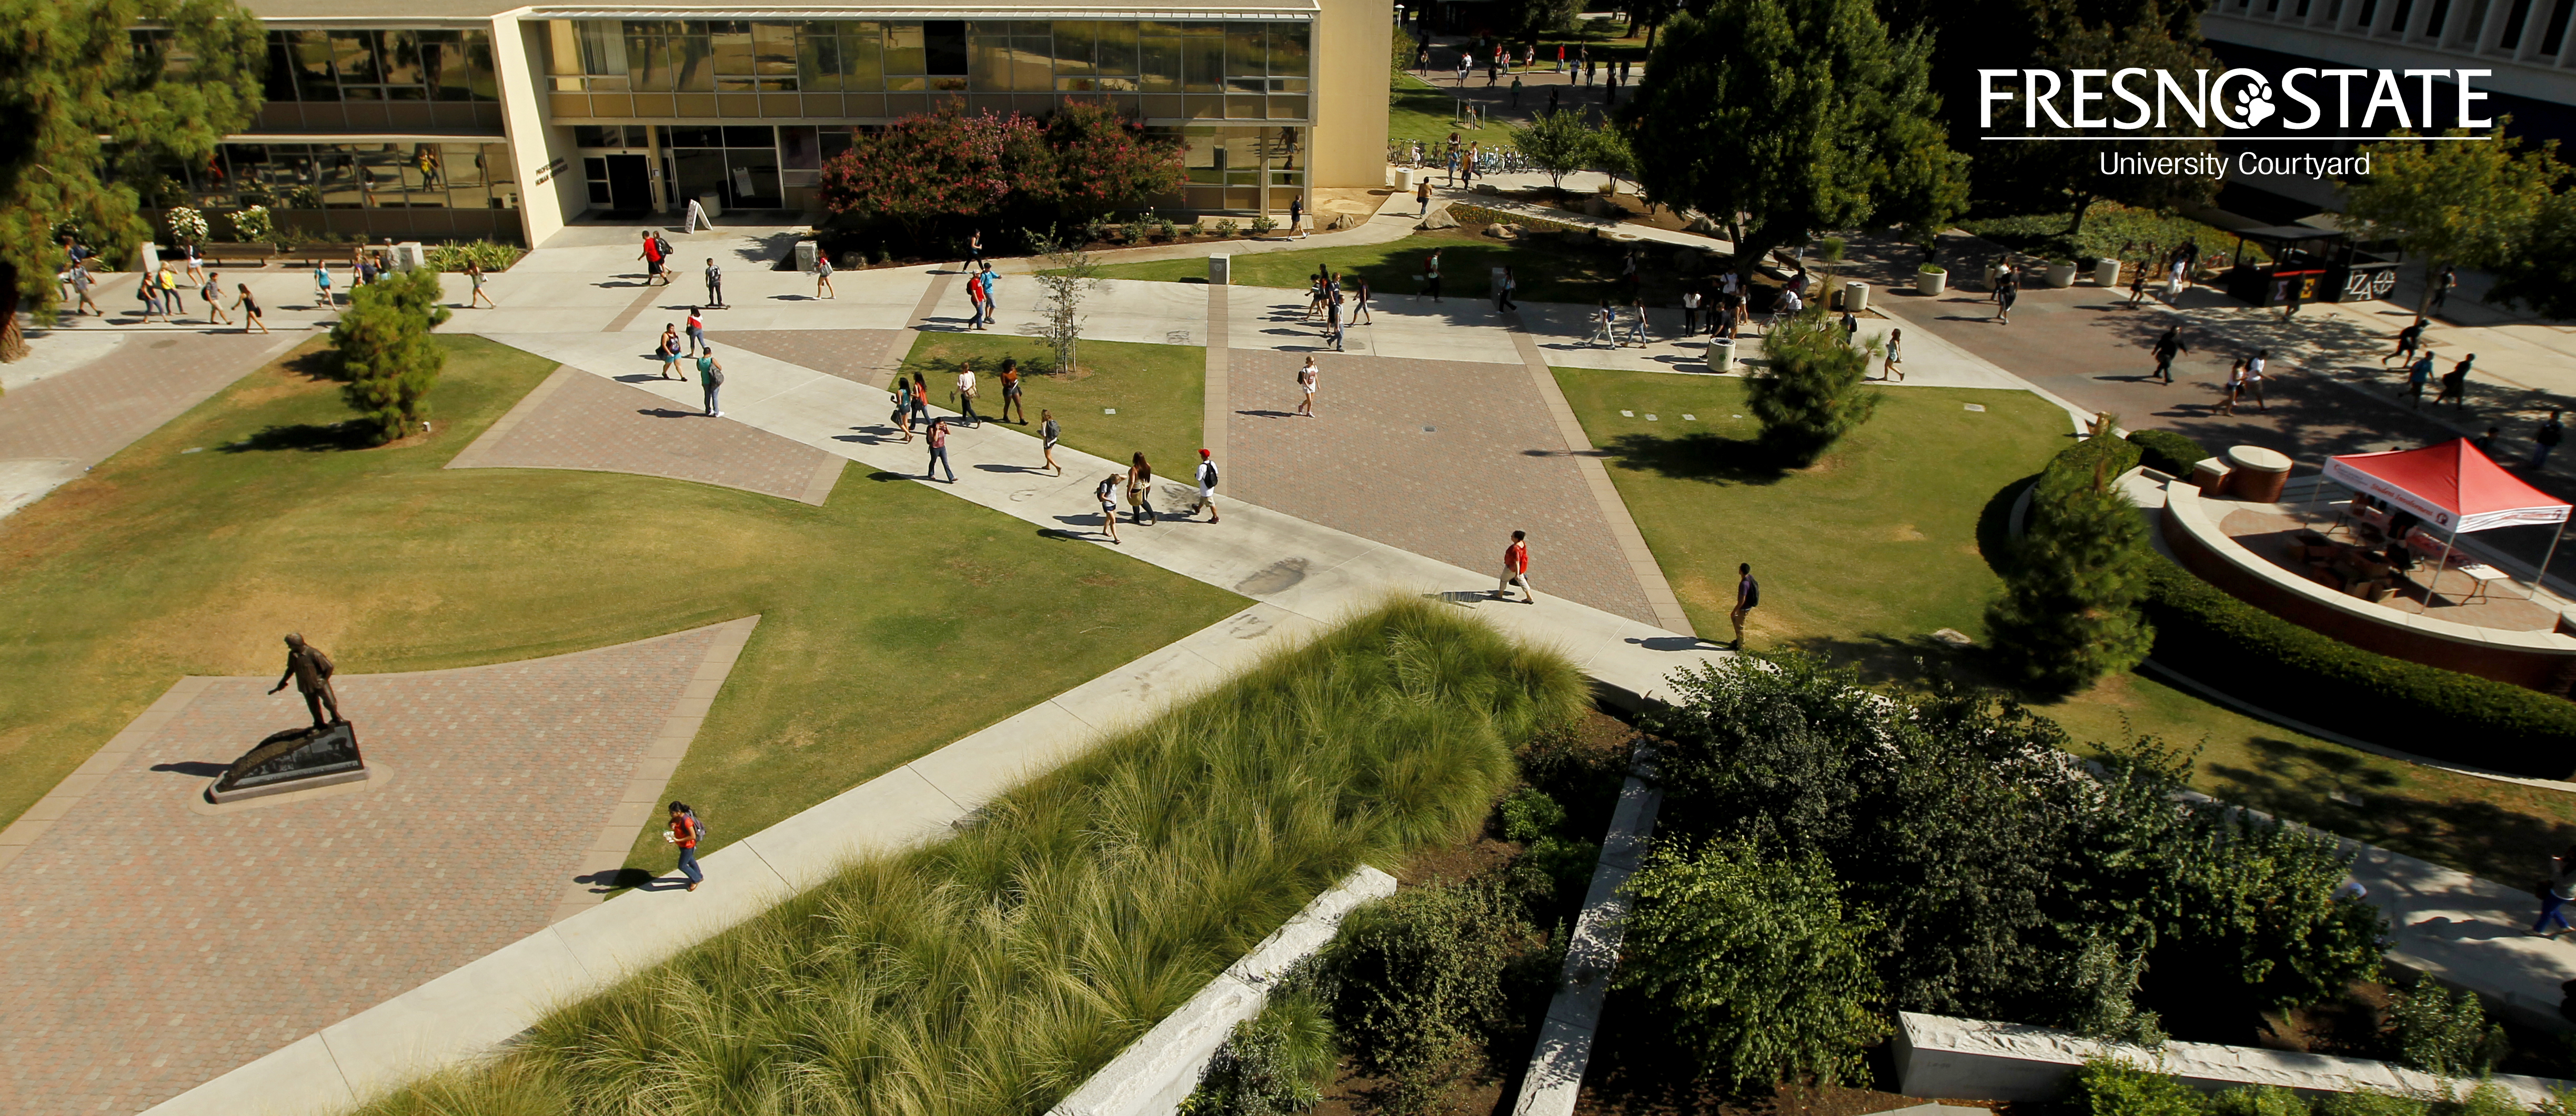 Why University Courtyard? – University Courtyard